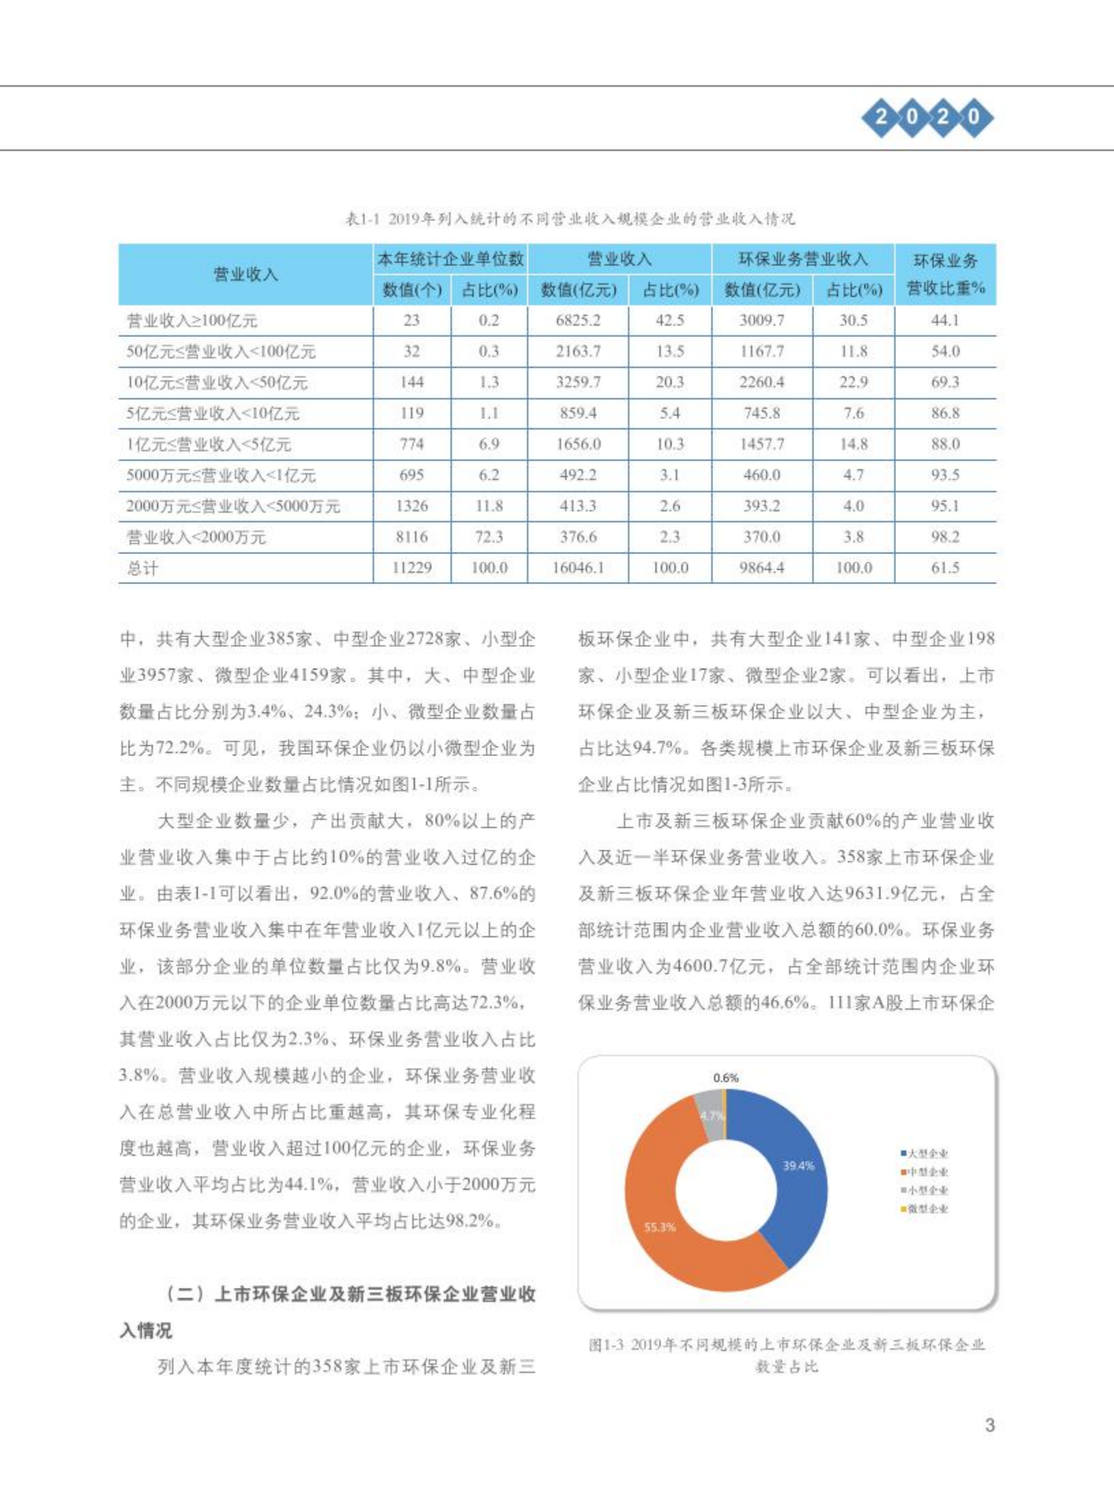 【2020】中国环保产业发展状况报告_04.png